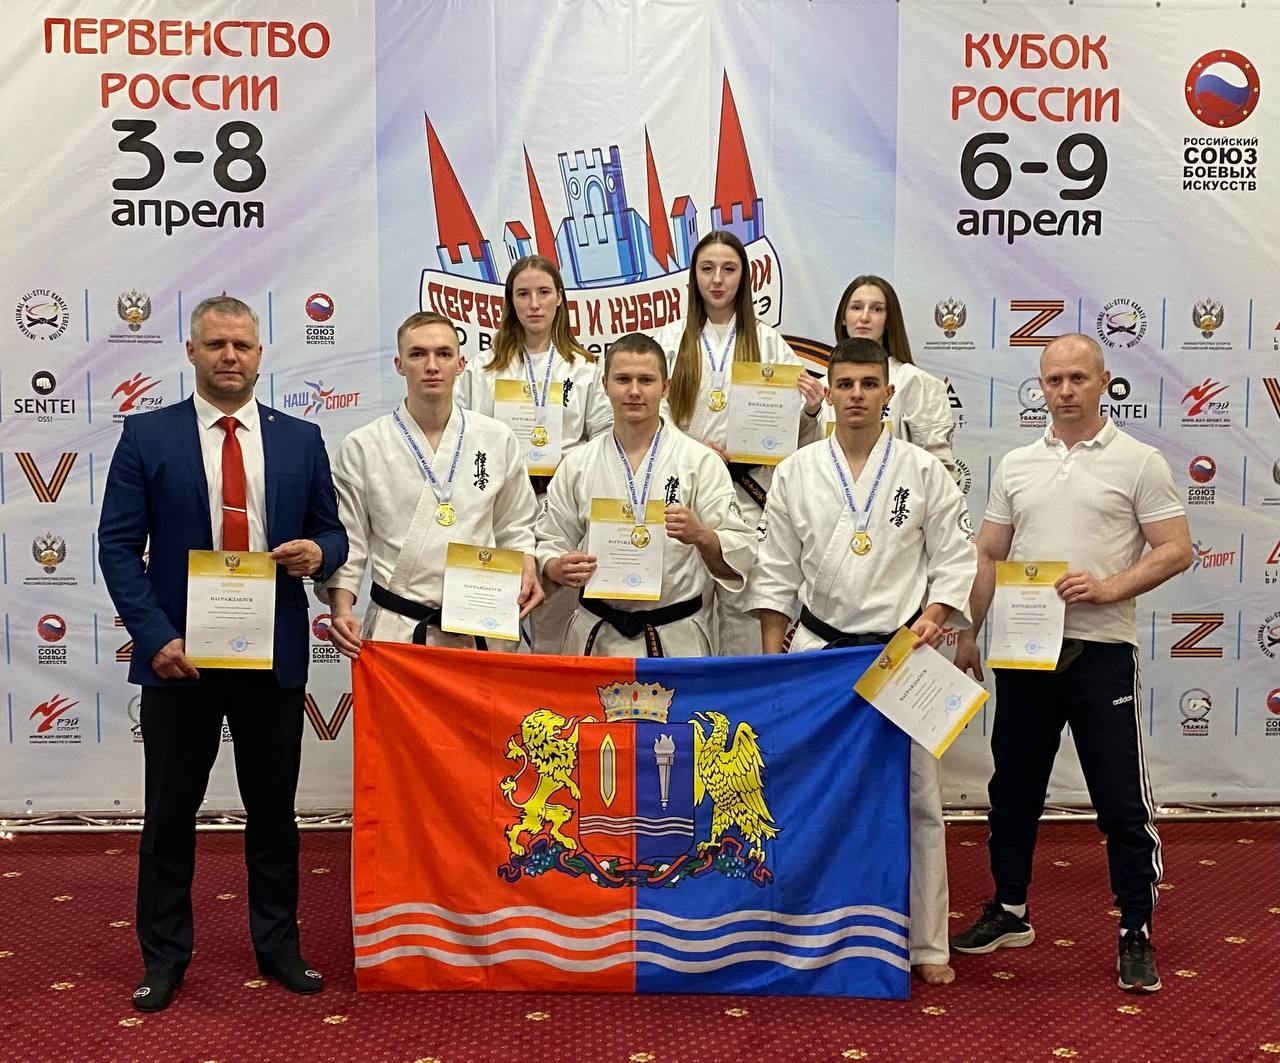 Сборная Ивановской области завоевала 6 золотых медалей на Кубке России по каратэ